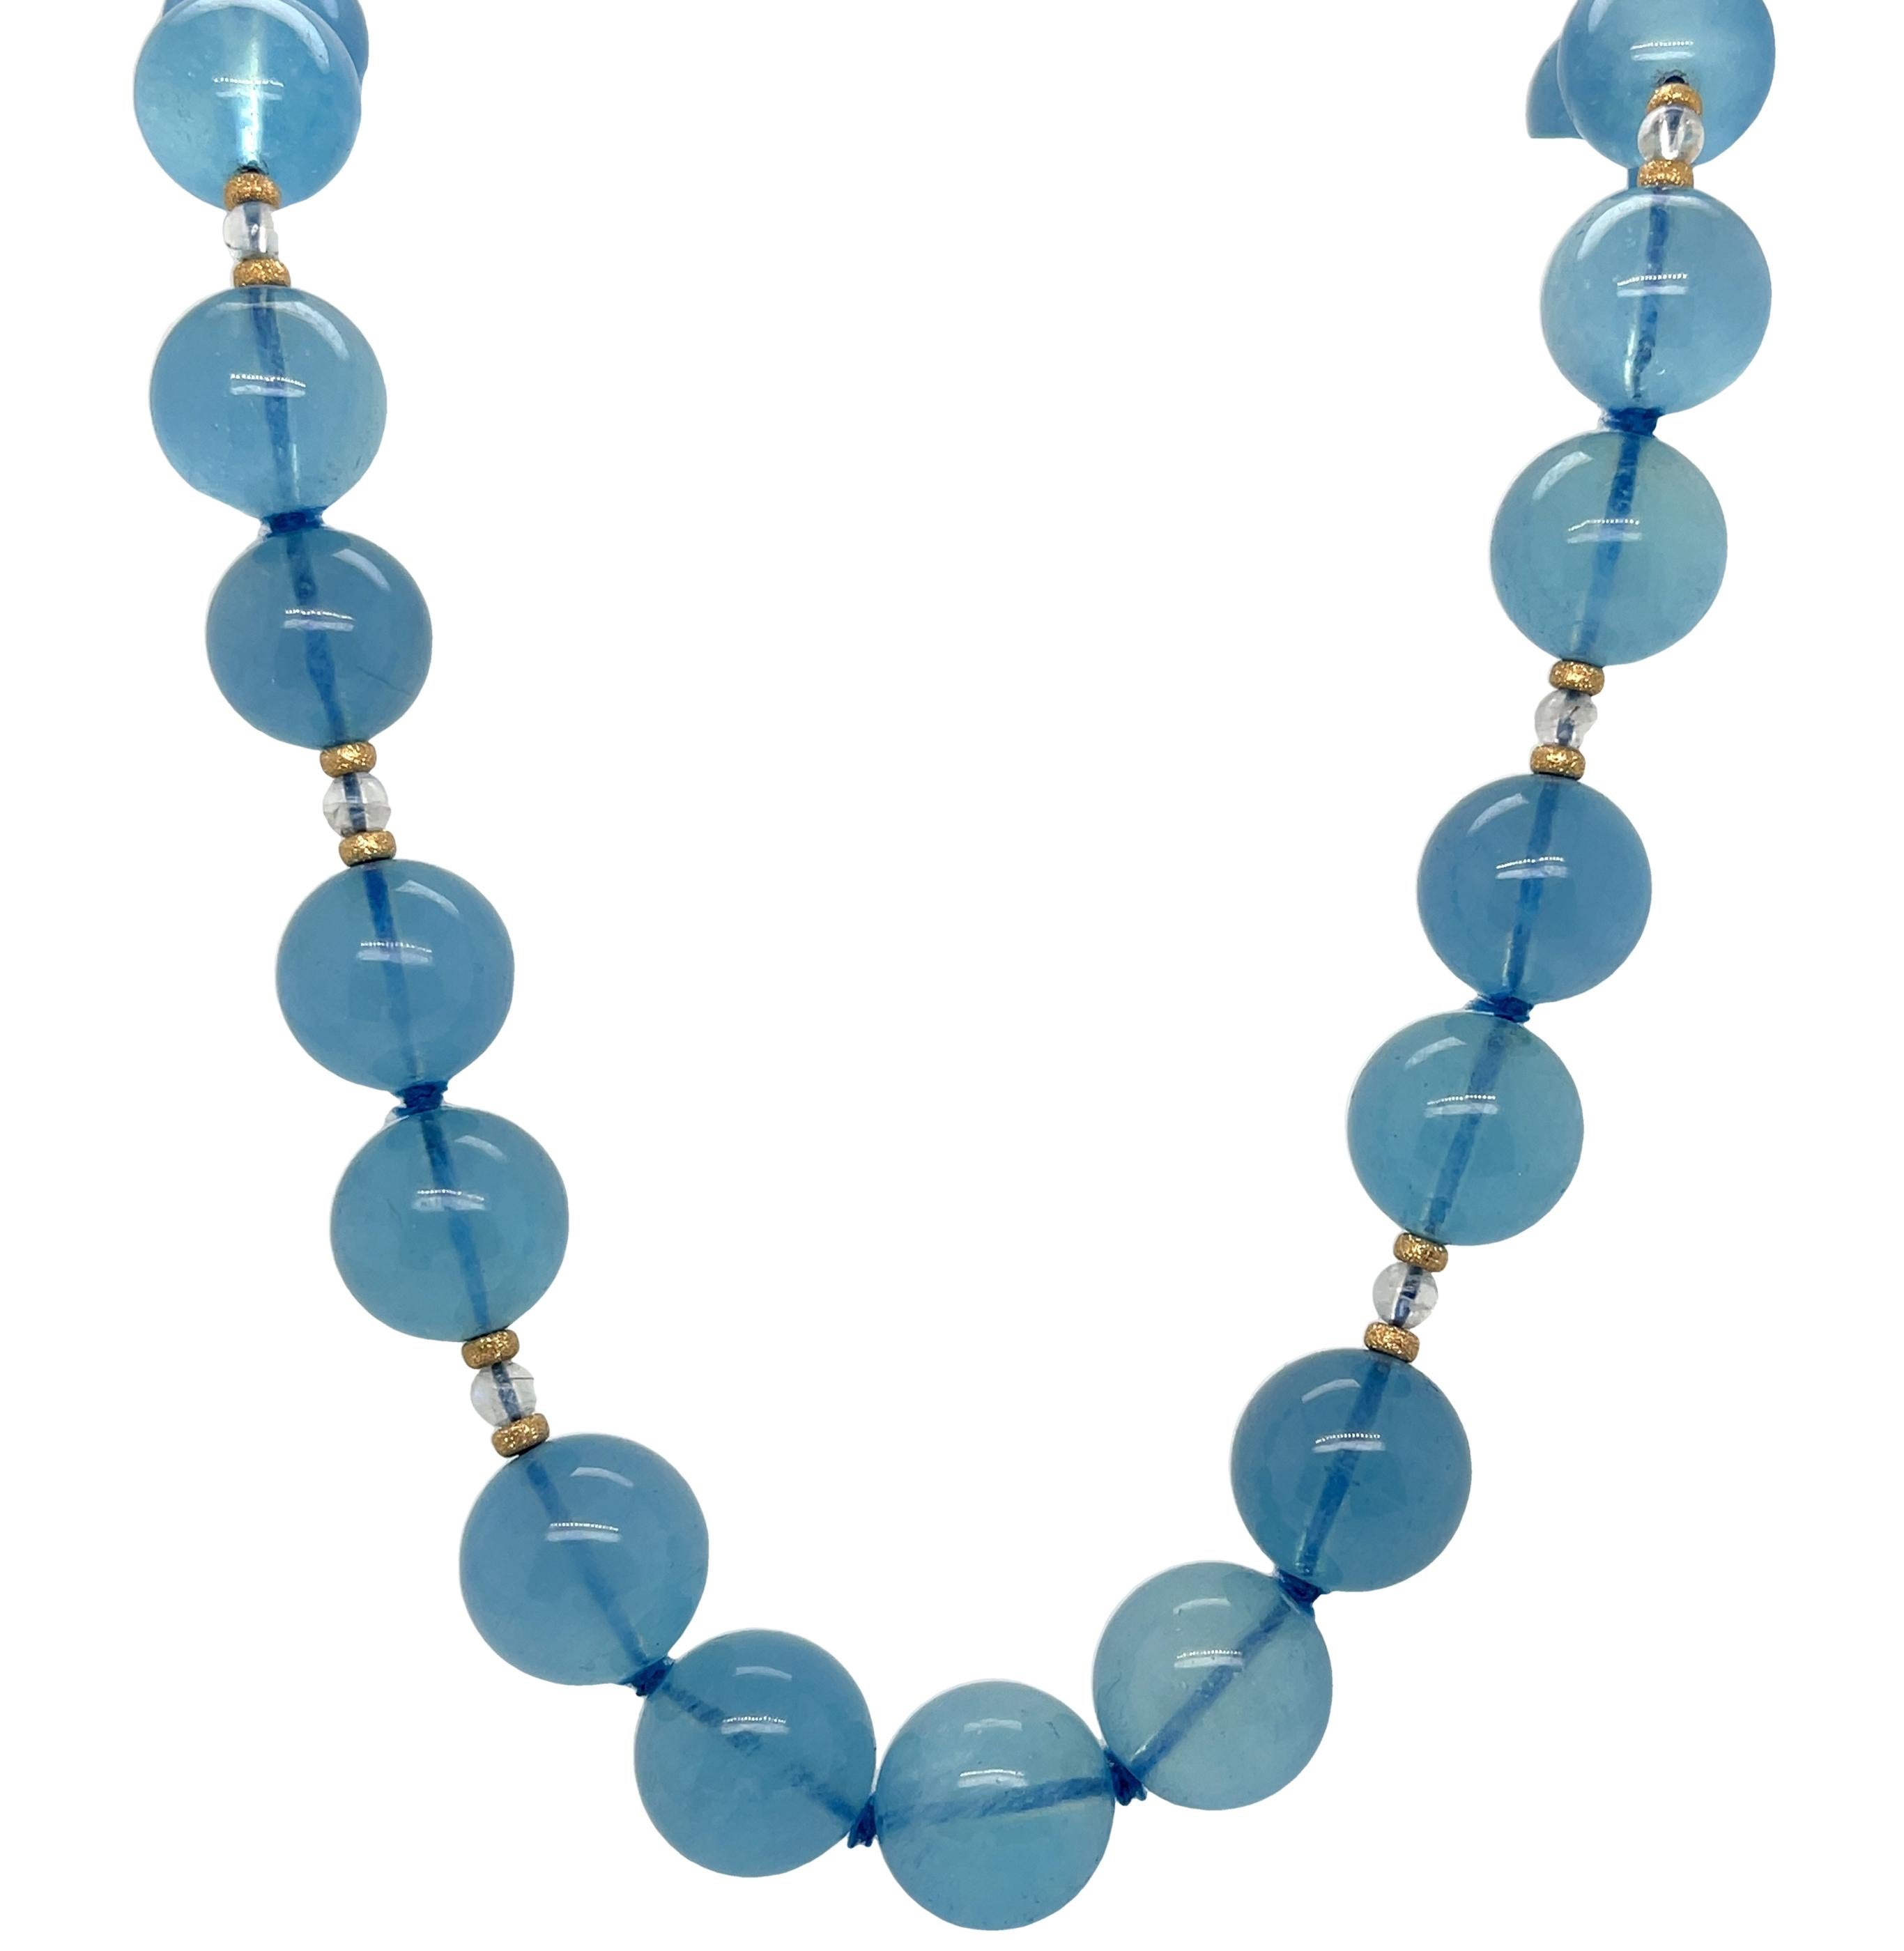 Diese wunderschöne Aquamarin-Halskette besteht aus natürlichen Aquamarin-Perlen in einem selten gesehenen tiefen Blau.  Diese Perlen haben eine beeindruckende Größe, einen Durchmesser von 13-14 mm, eine schöne Durchsichtigkeit und eine gleichmäßige